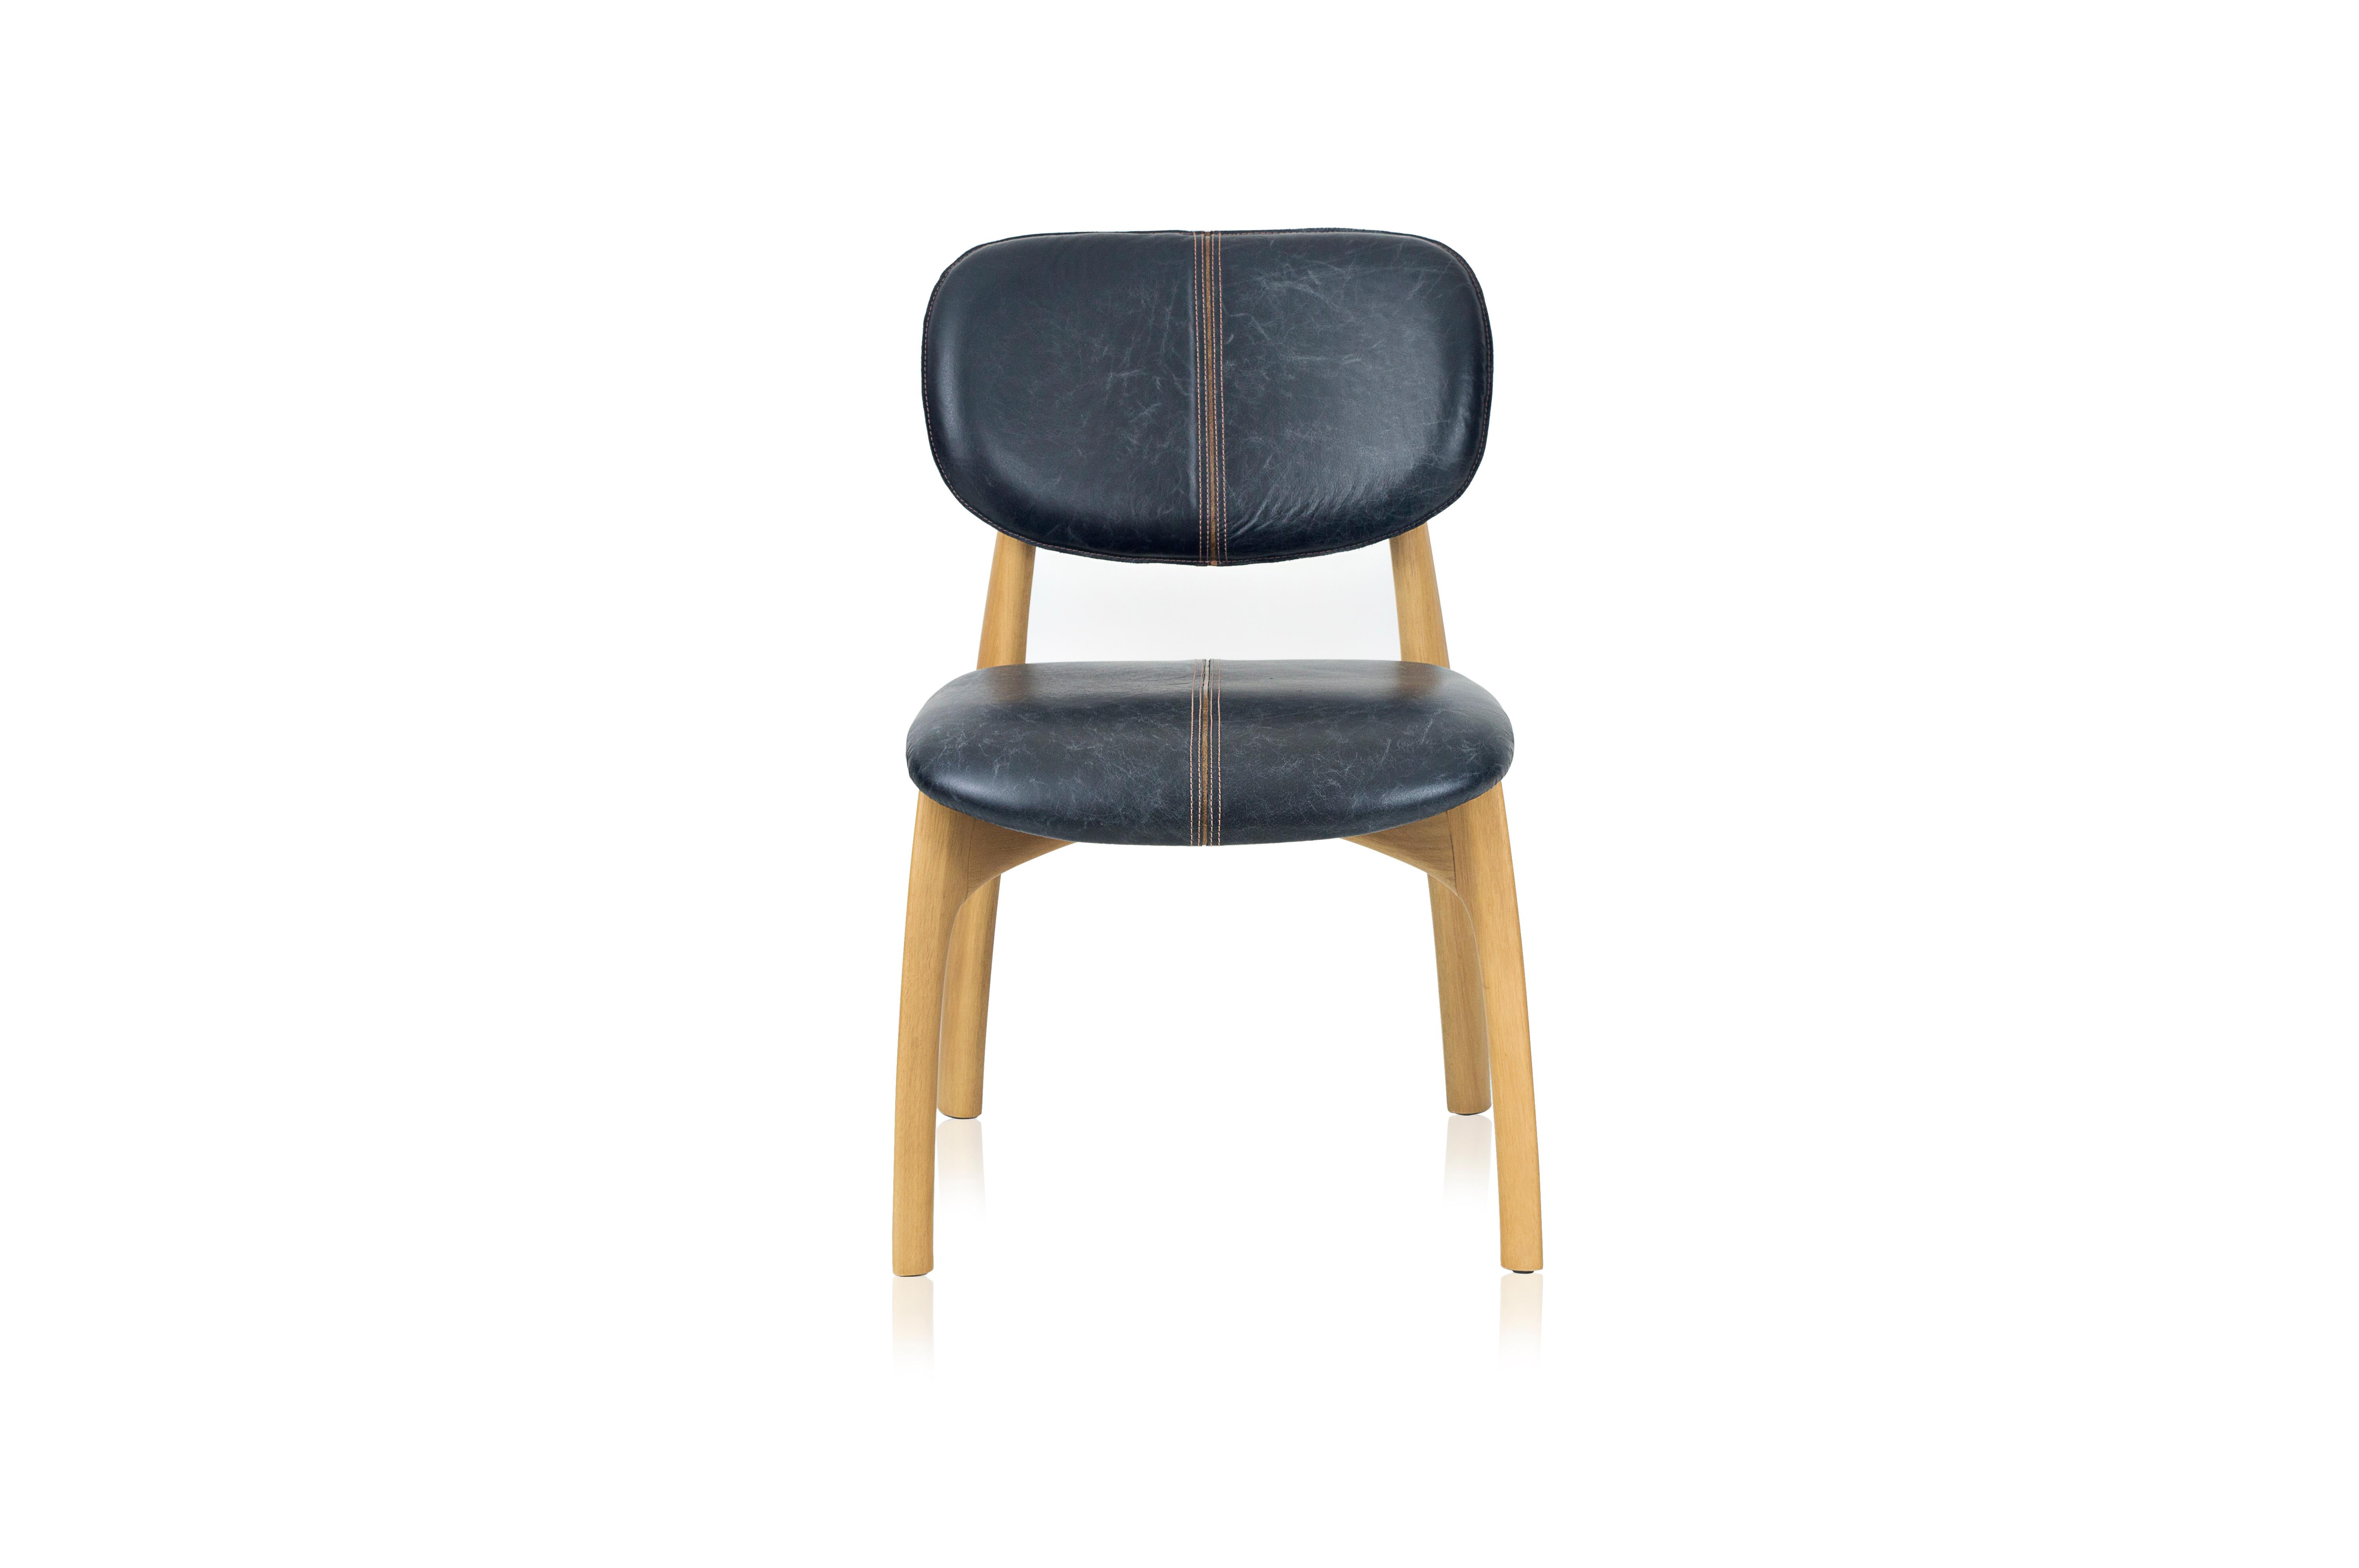 Conçu pour les espaces extérieurs et intérieurs, ce fauteuil fait directement référence à un sport qui s'identifie culturellement au Brésil : le surf.
La première pièce produite afin de présenter le concept avait le dossier et l'assise de la chaise